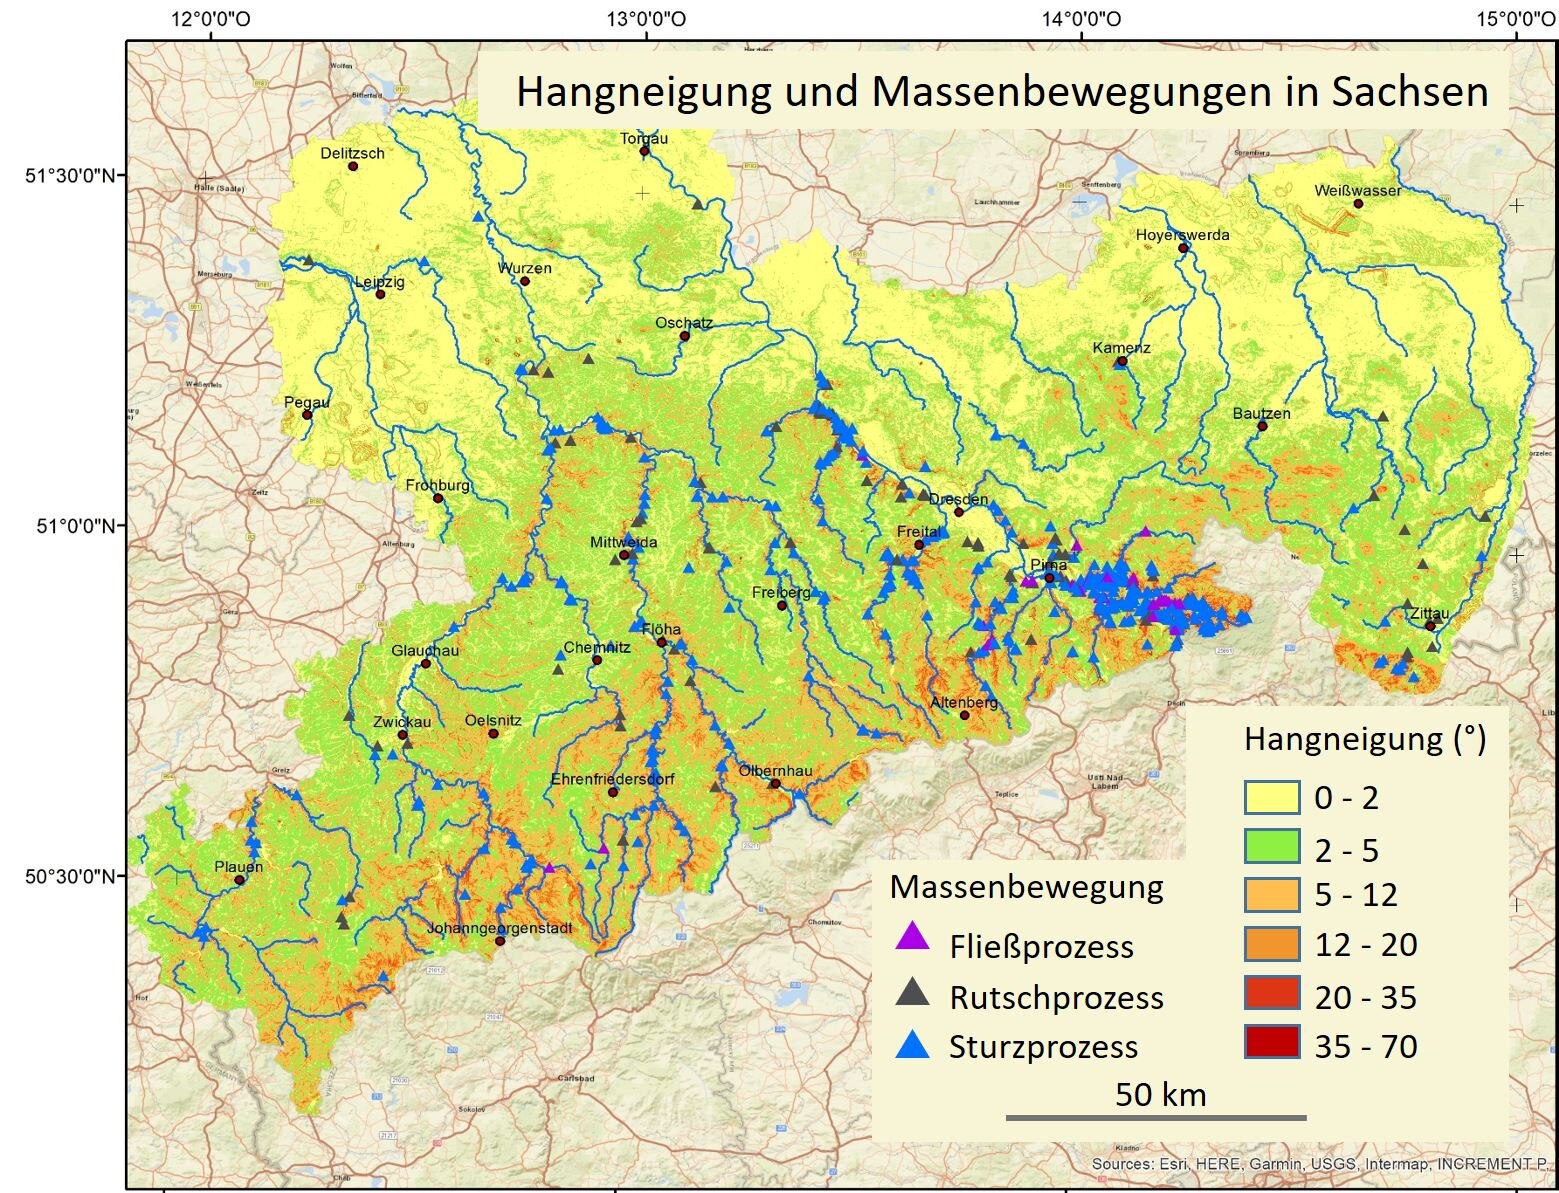 Das Bild zeigt die Karte mit Hangneigung und Massenbewegungen in Sachsen.